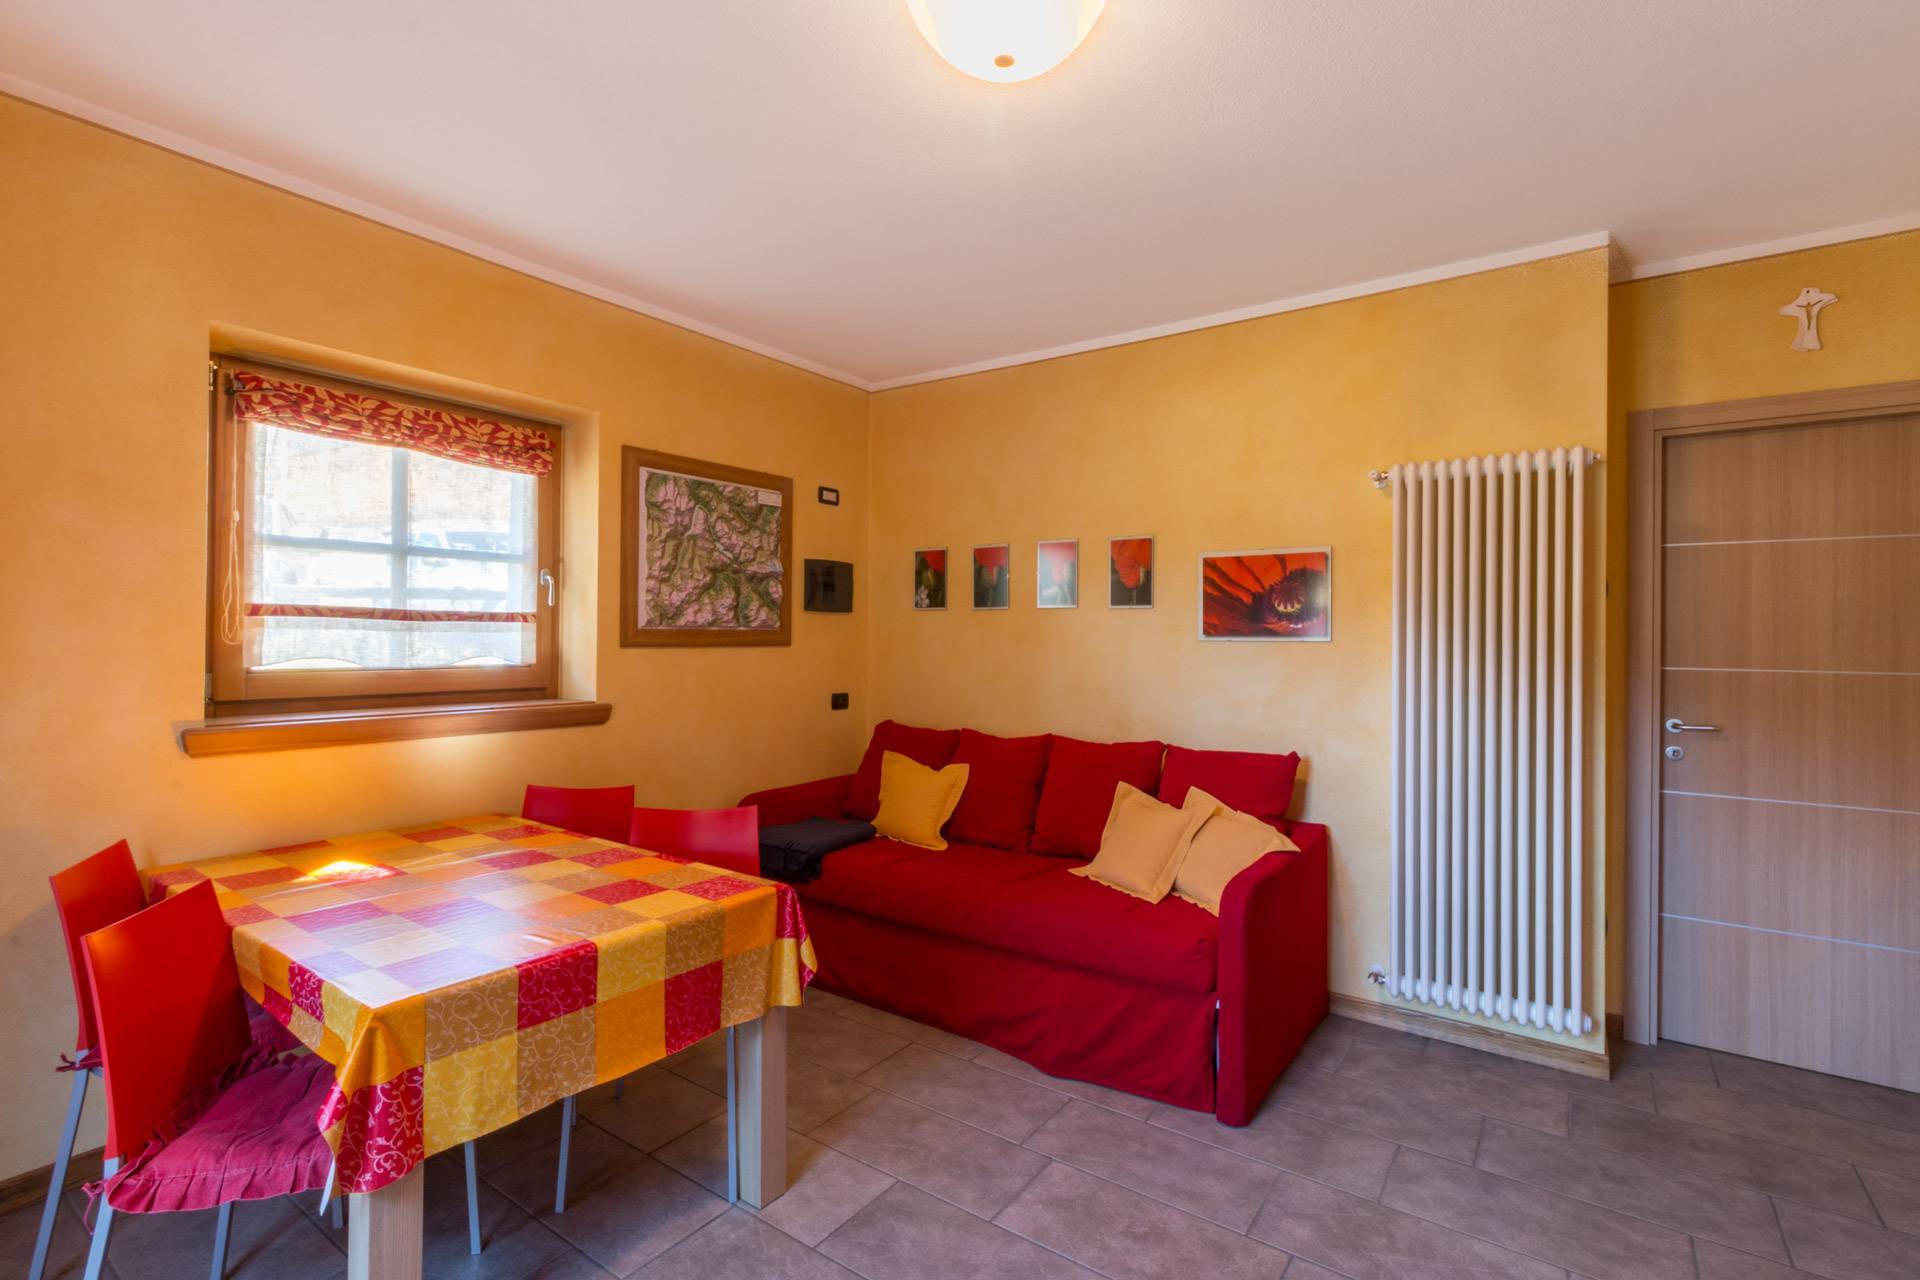 Ground-floor apartment in Livigno